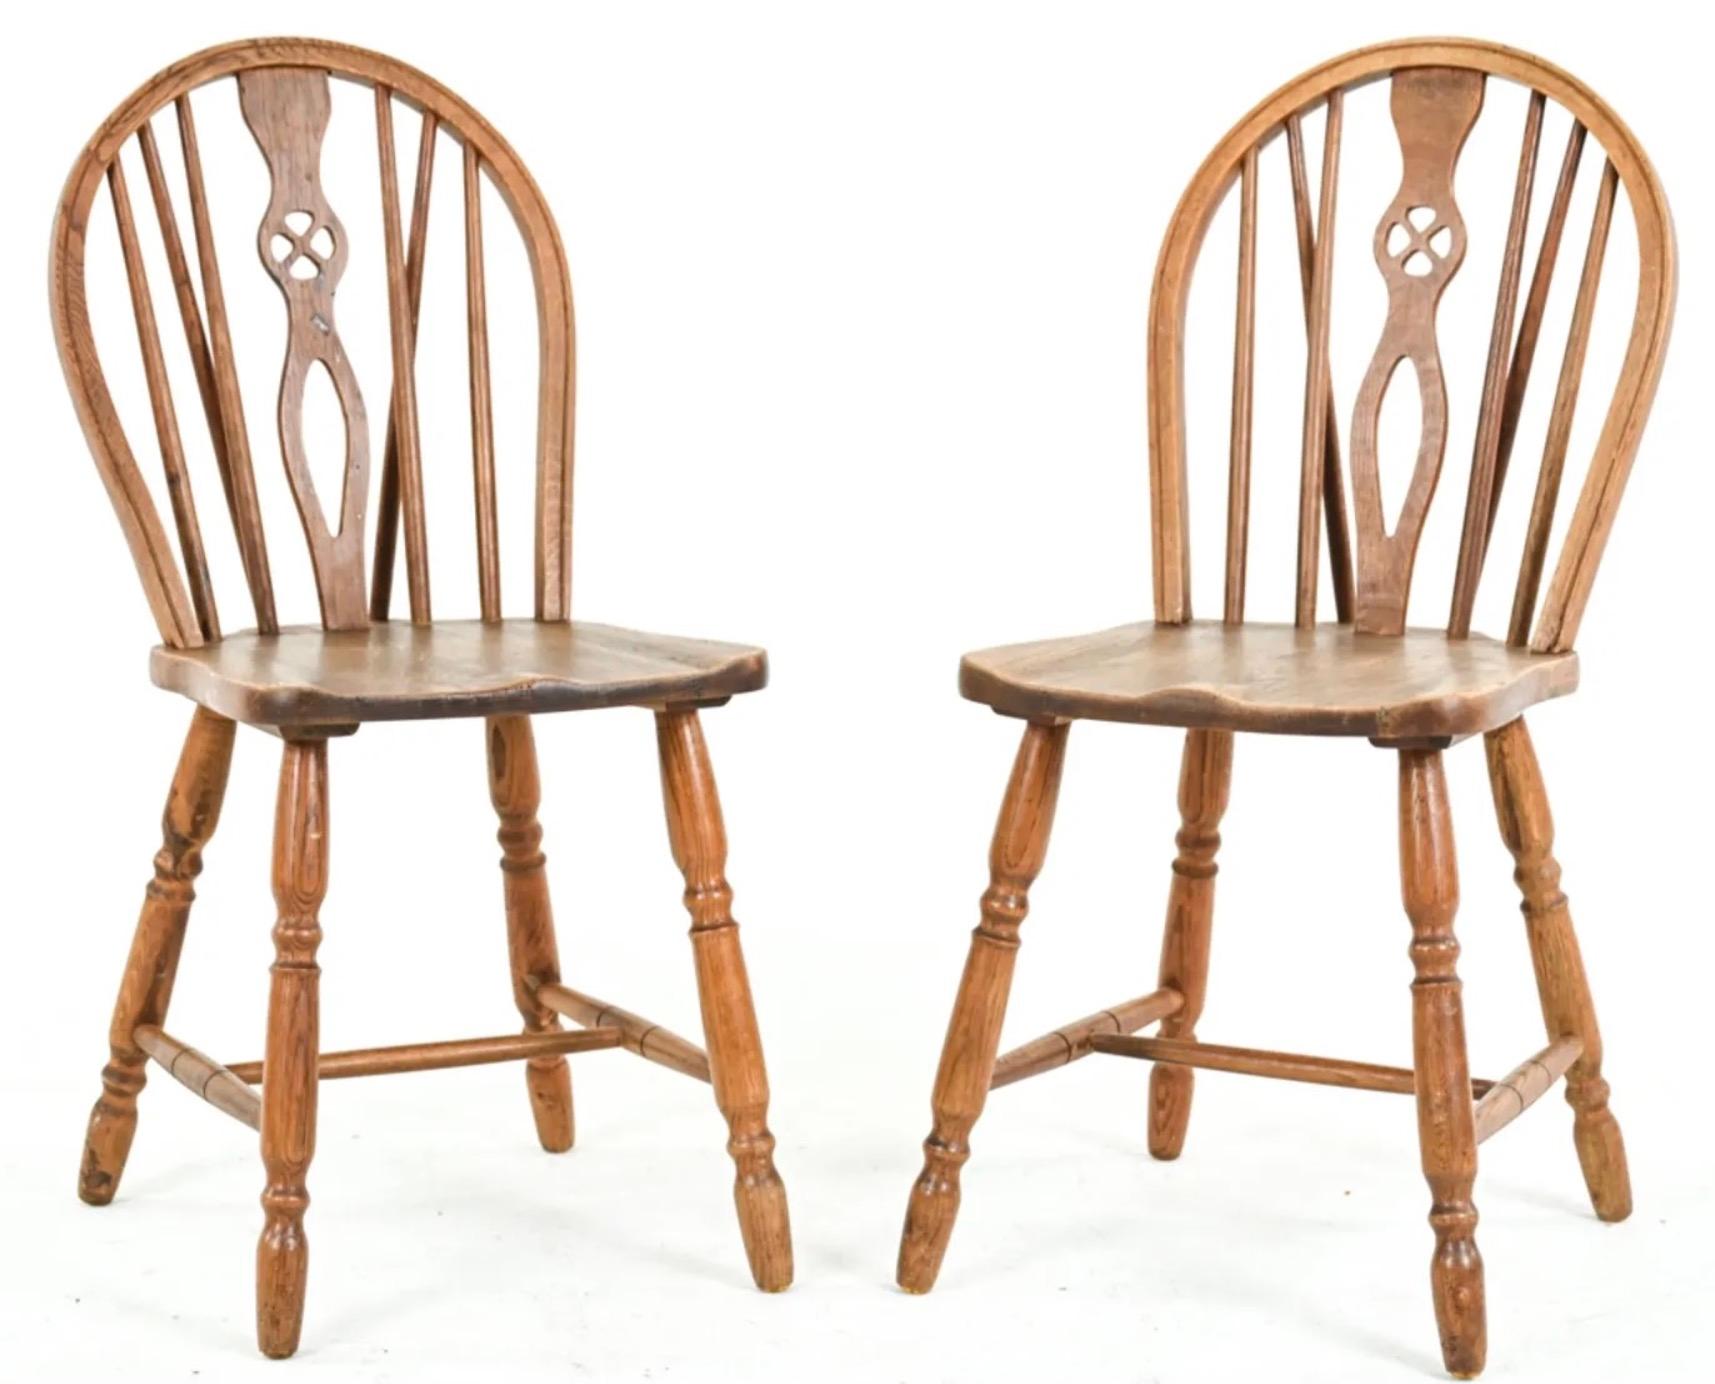 Magnifique ensemble de chaises de salle à manger à dossier bas de style Windsor, sculpté à la main, en bois d'if, avec des dossiers à éclisses percés et des sièges bien figurés, reposant sur des pieds tournés unis par de simples traverses.
Les